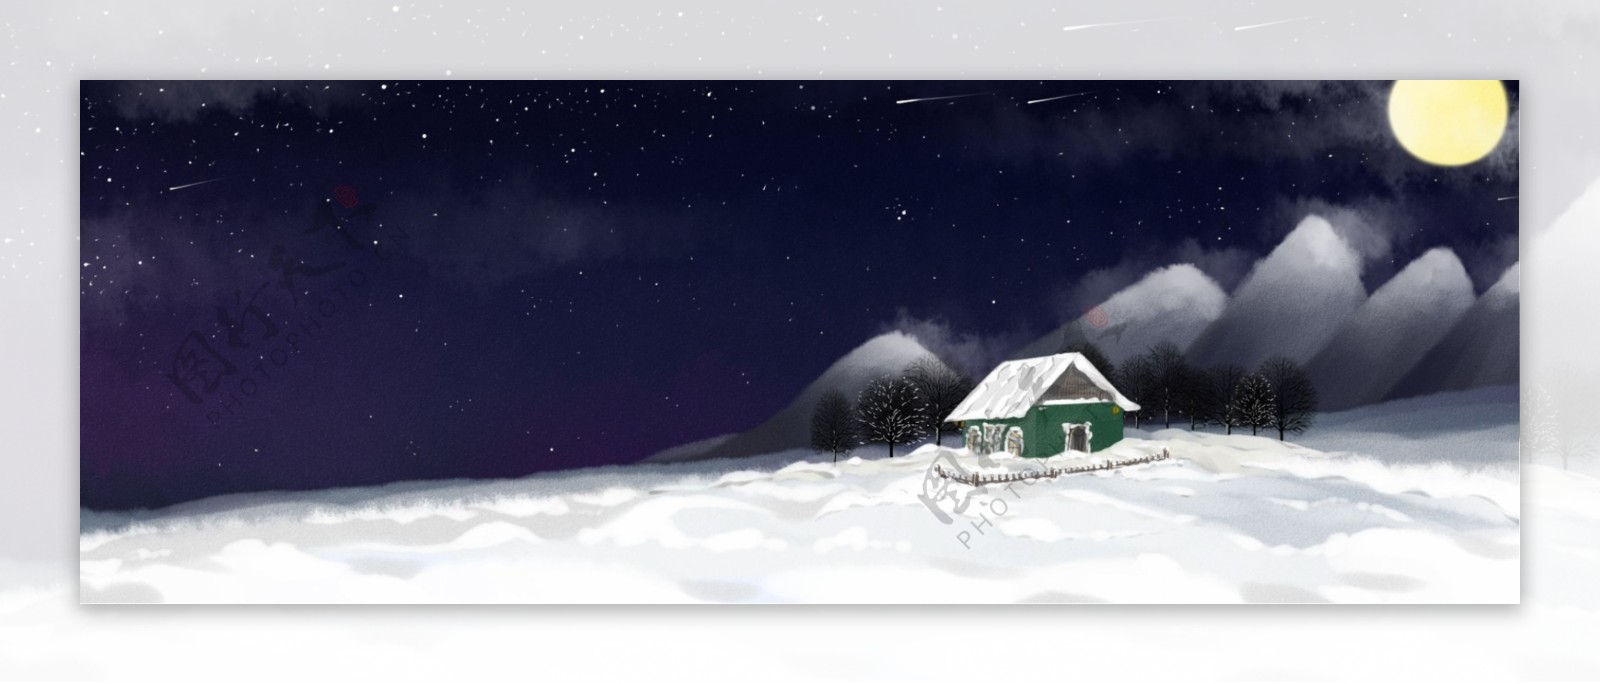 纯手绘原创冬天星空夜晚月亮房子水彩背景